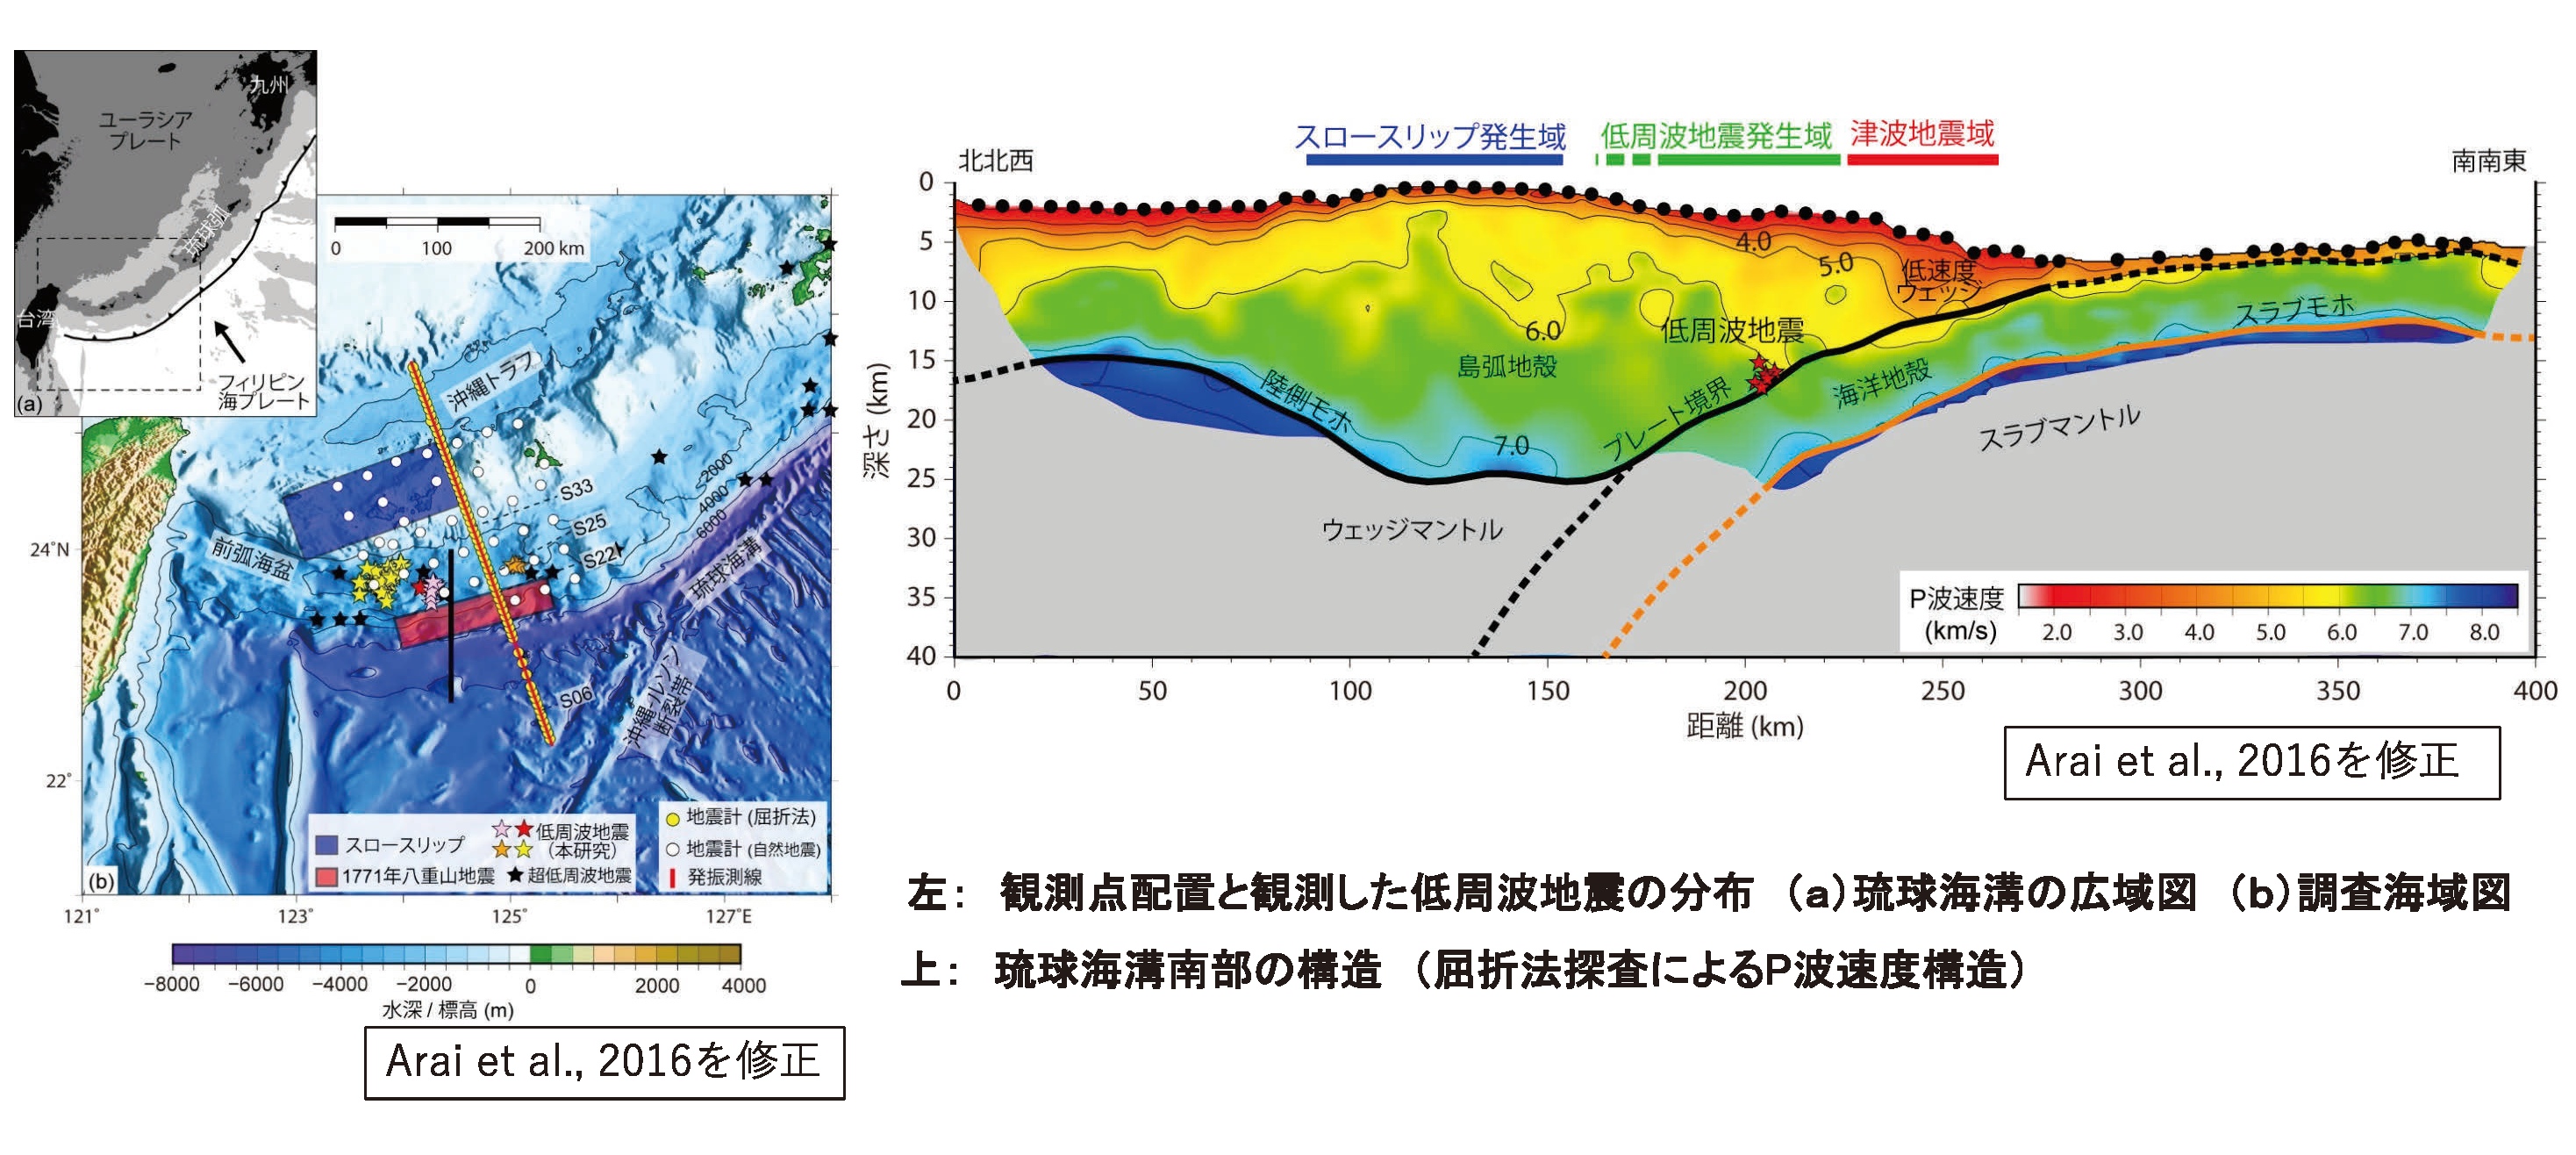 図5　琉球海溝南部におけるプレート境界断層とプレート境界で発生する低周波地震を観測—巨大津波発生域の沈み込み構造を特定—